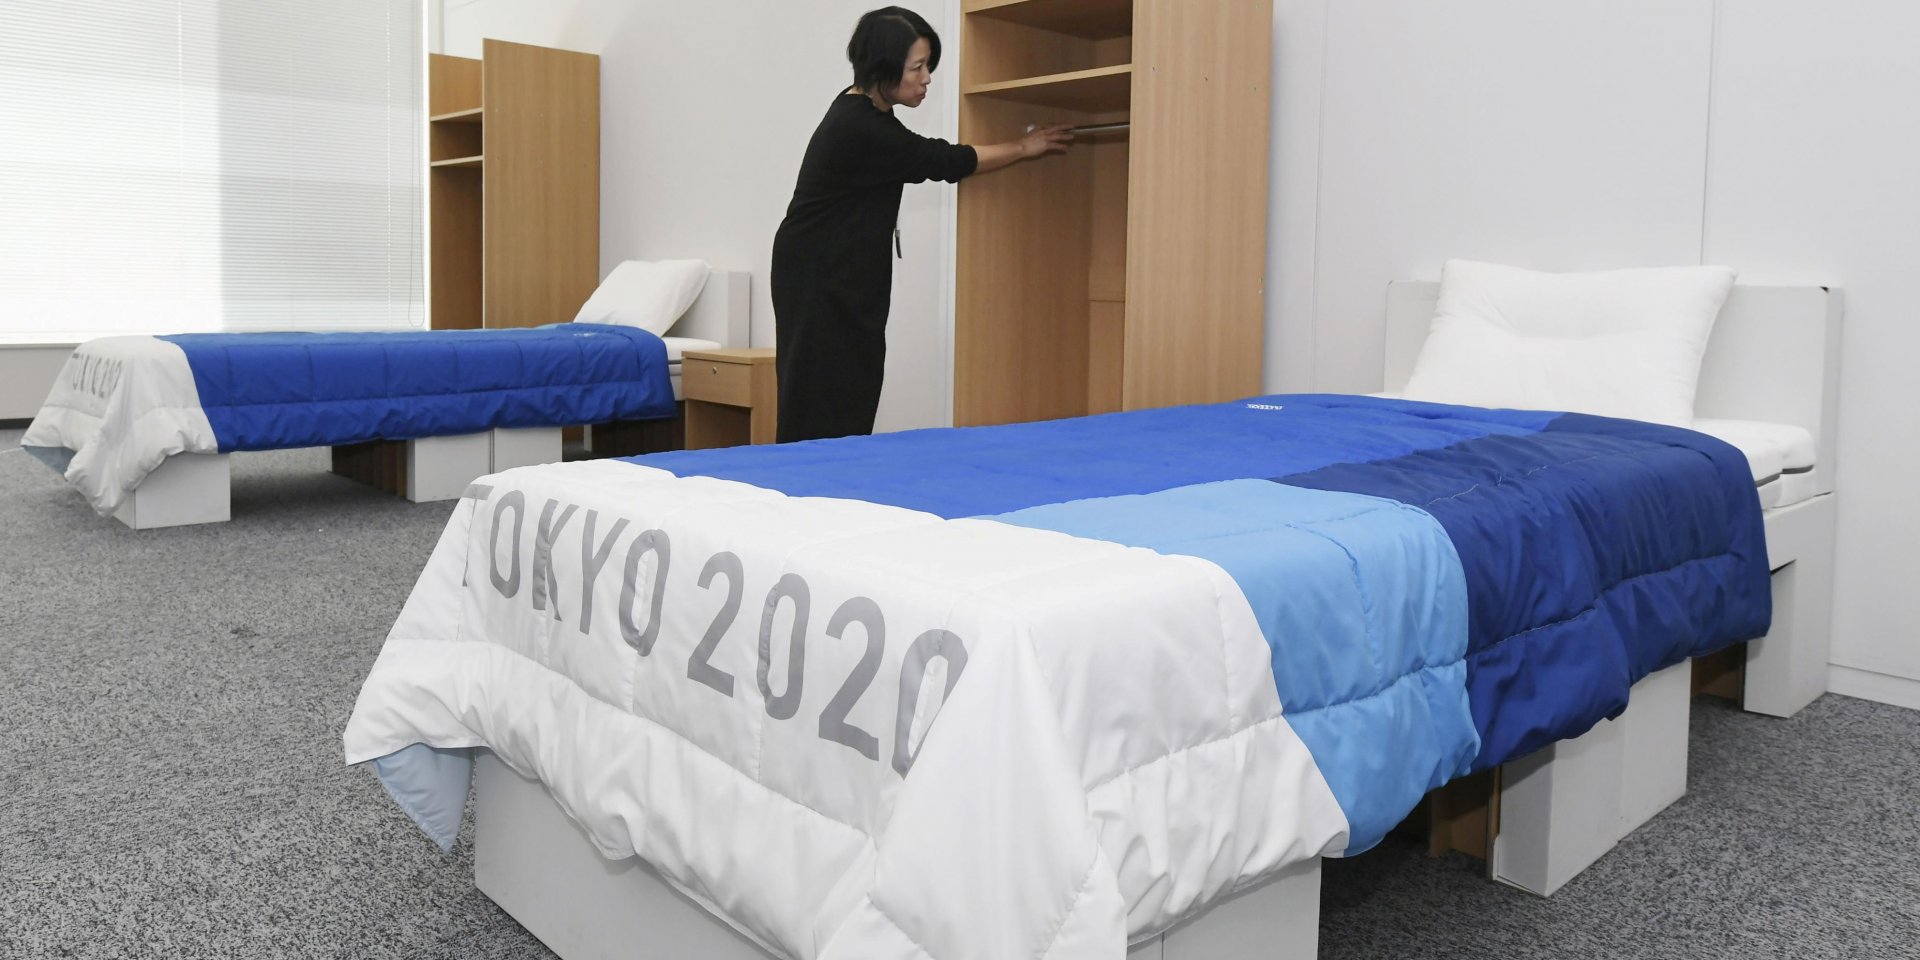 Для олимпийцев в Токио создали антисекс-кровати из картона